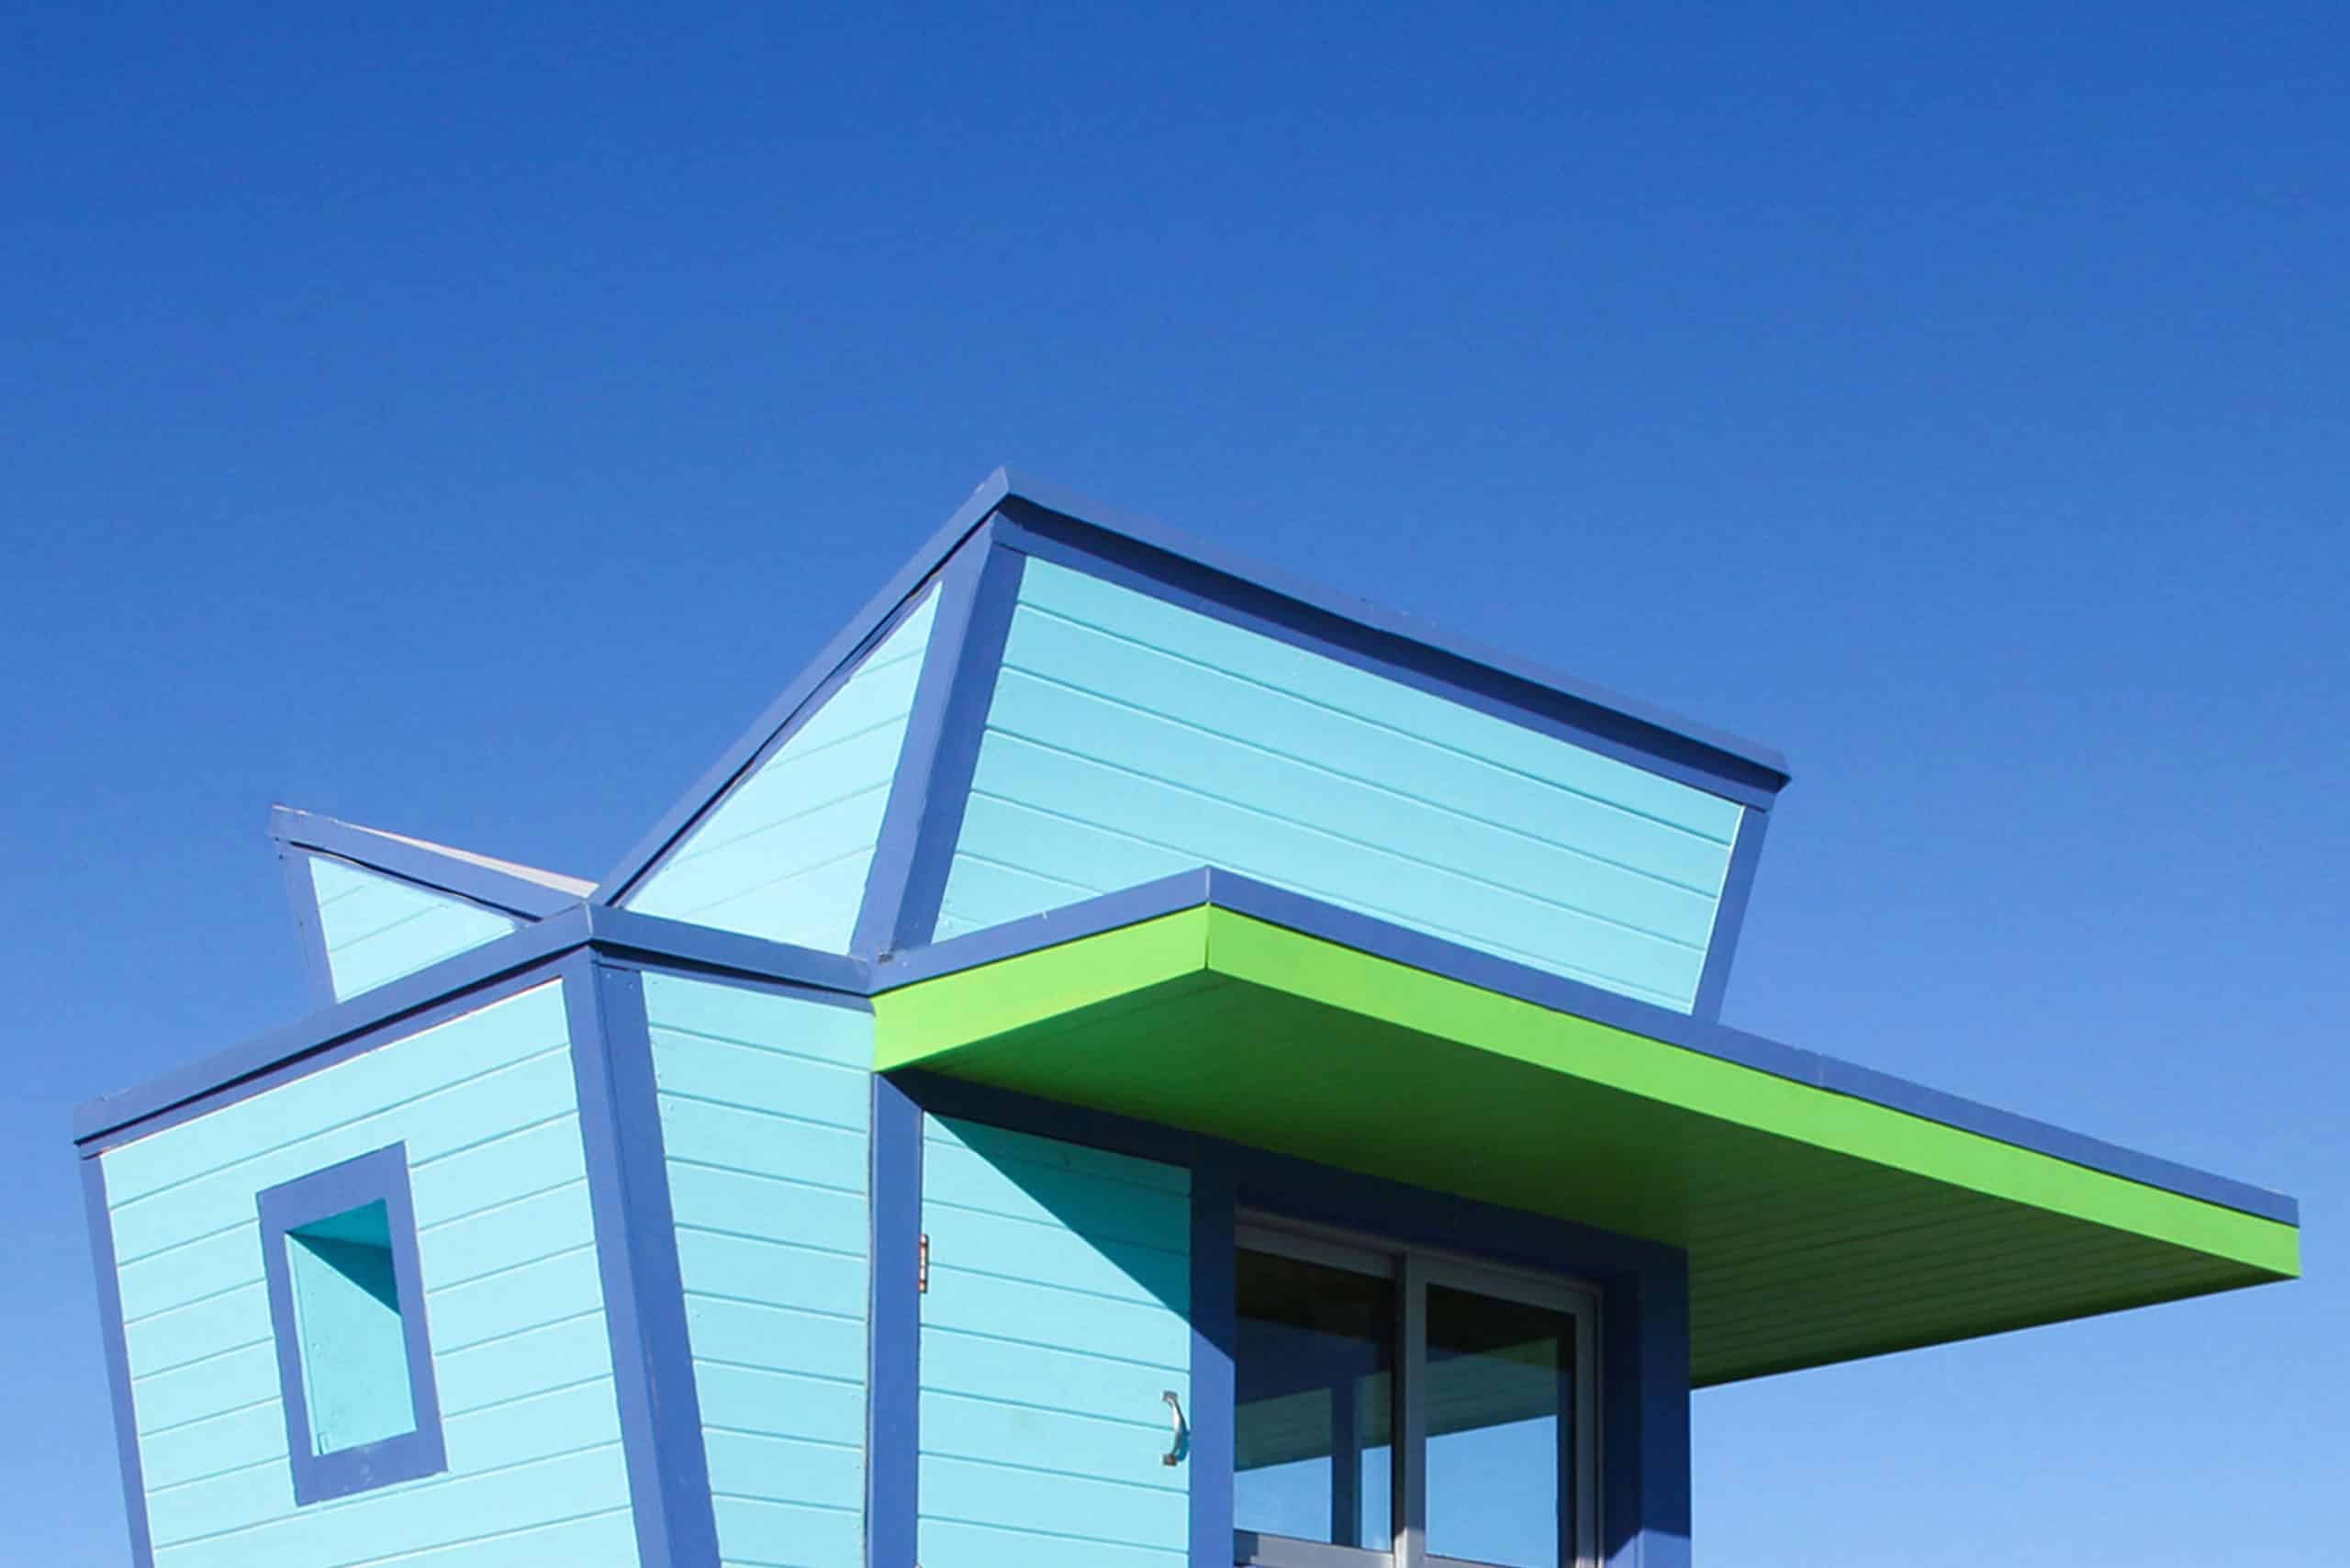 Detail eines hölzernen Strandwächterhäuschens in Blautönen und Grün. Miami Beach, Lifeguard Tower, William Lane, Foto: Archiv Architekten